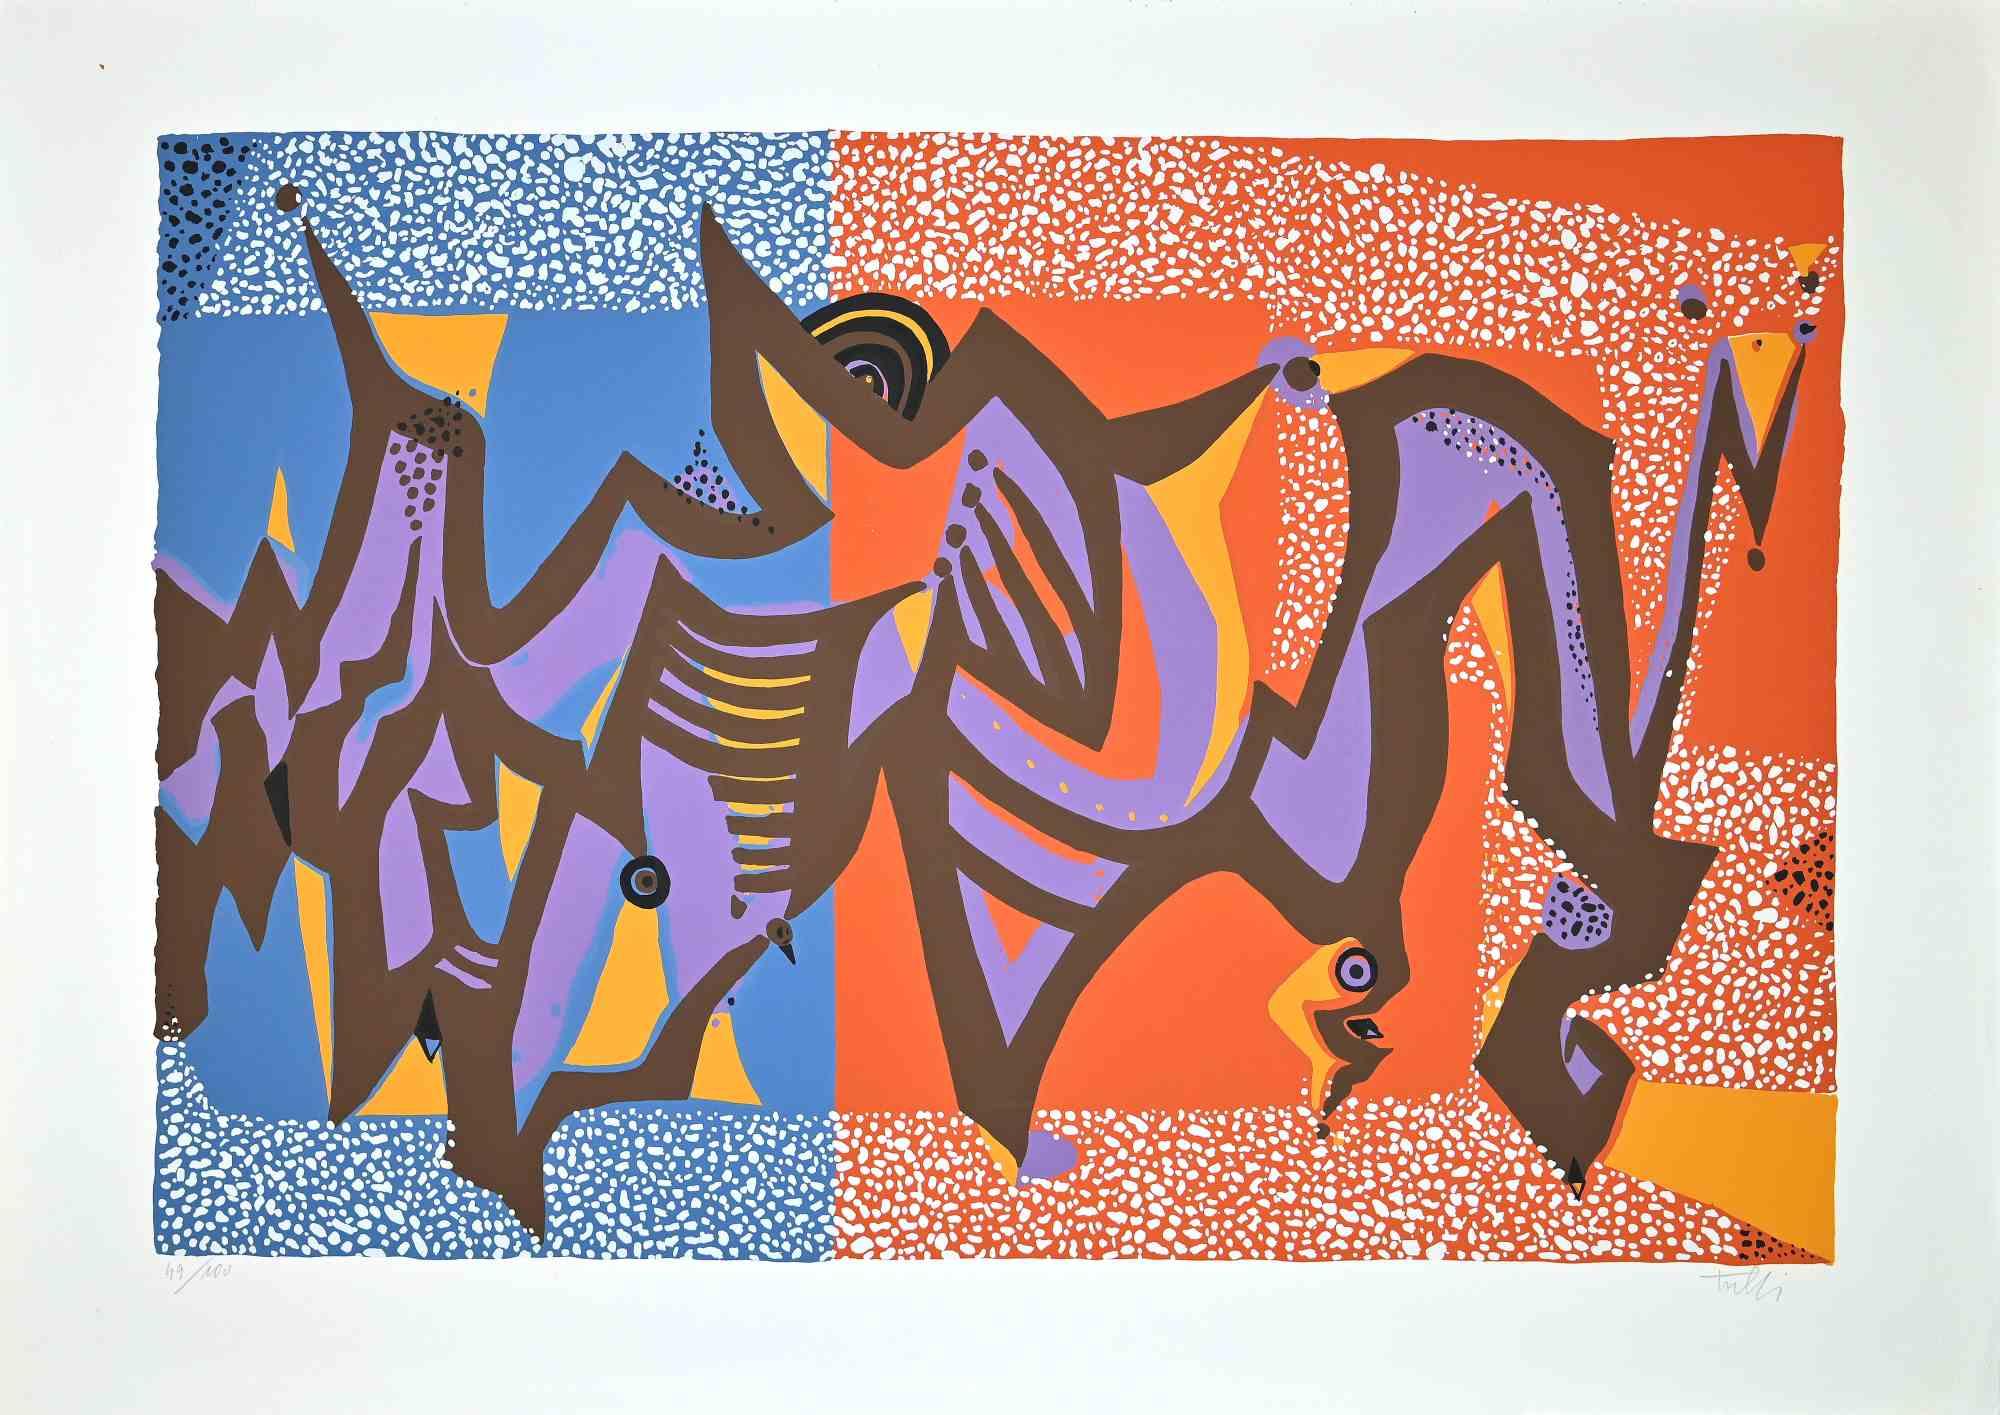 Composition carnavalesque est une sérigraphie colorée sur papier, réalisée dans les années 1970 par l'artiste italien Wladimiro Tulli.
Signé à la main en bas à droite et numéroté au crayon dans la marge inférieure. Edition de 43/100 tirages.

Une